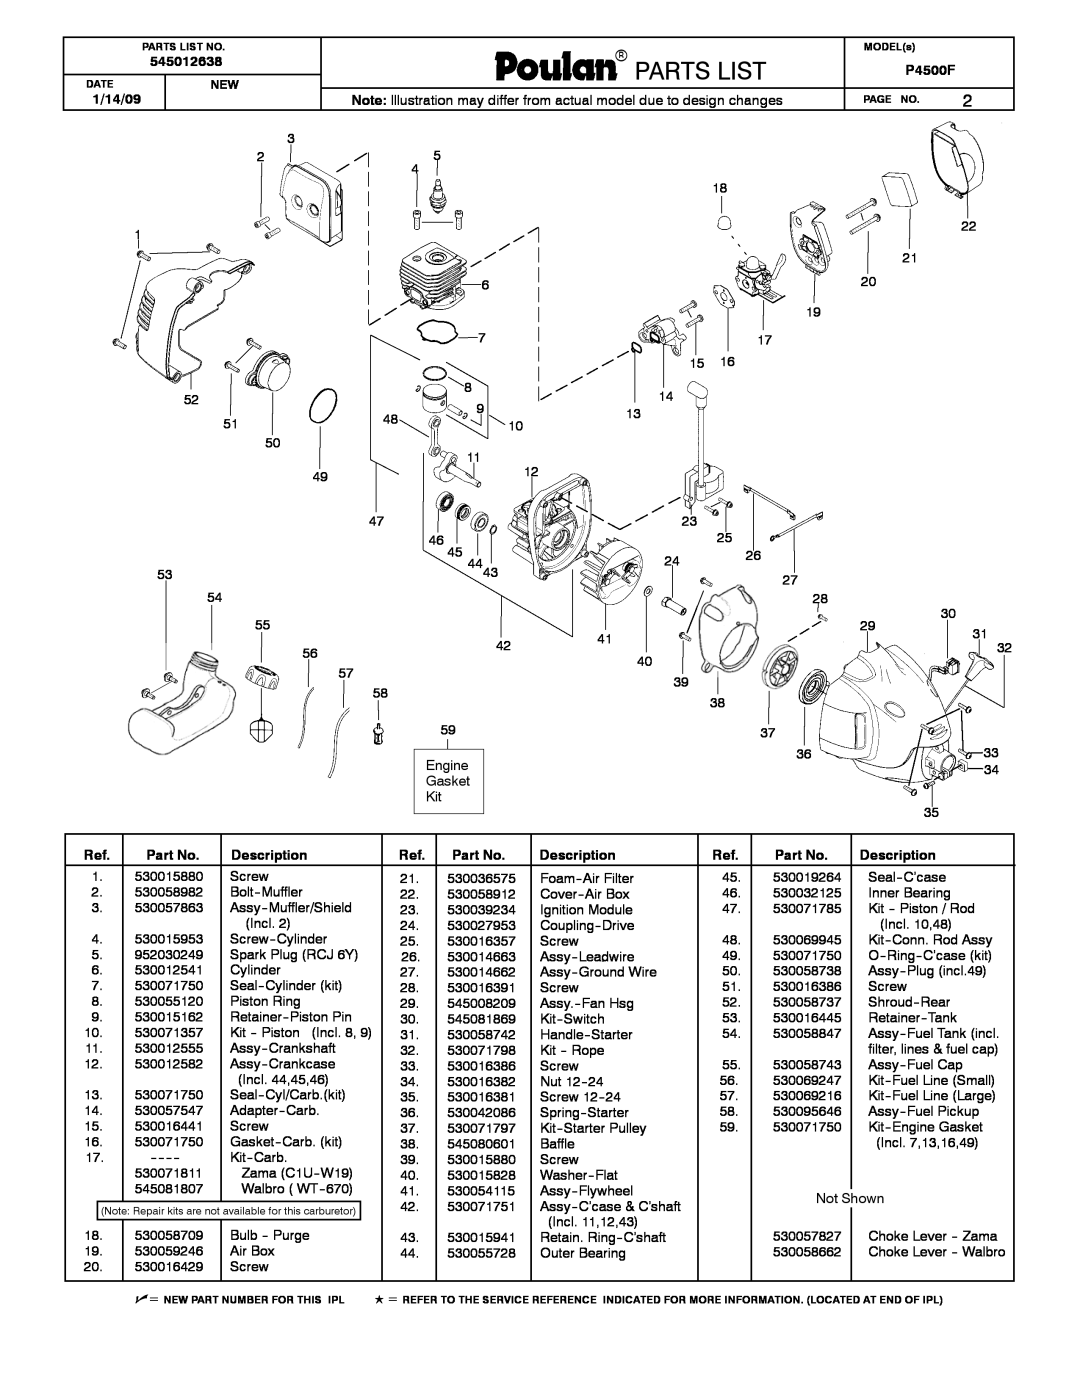 Poulan 545012638 manual Parts List, Poulanparamountpoulanpro Partslistst, 1/14/09, P4500F, Description 